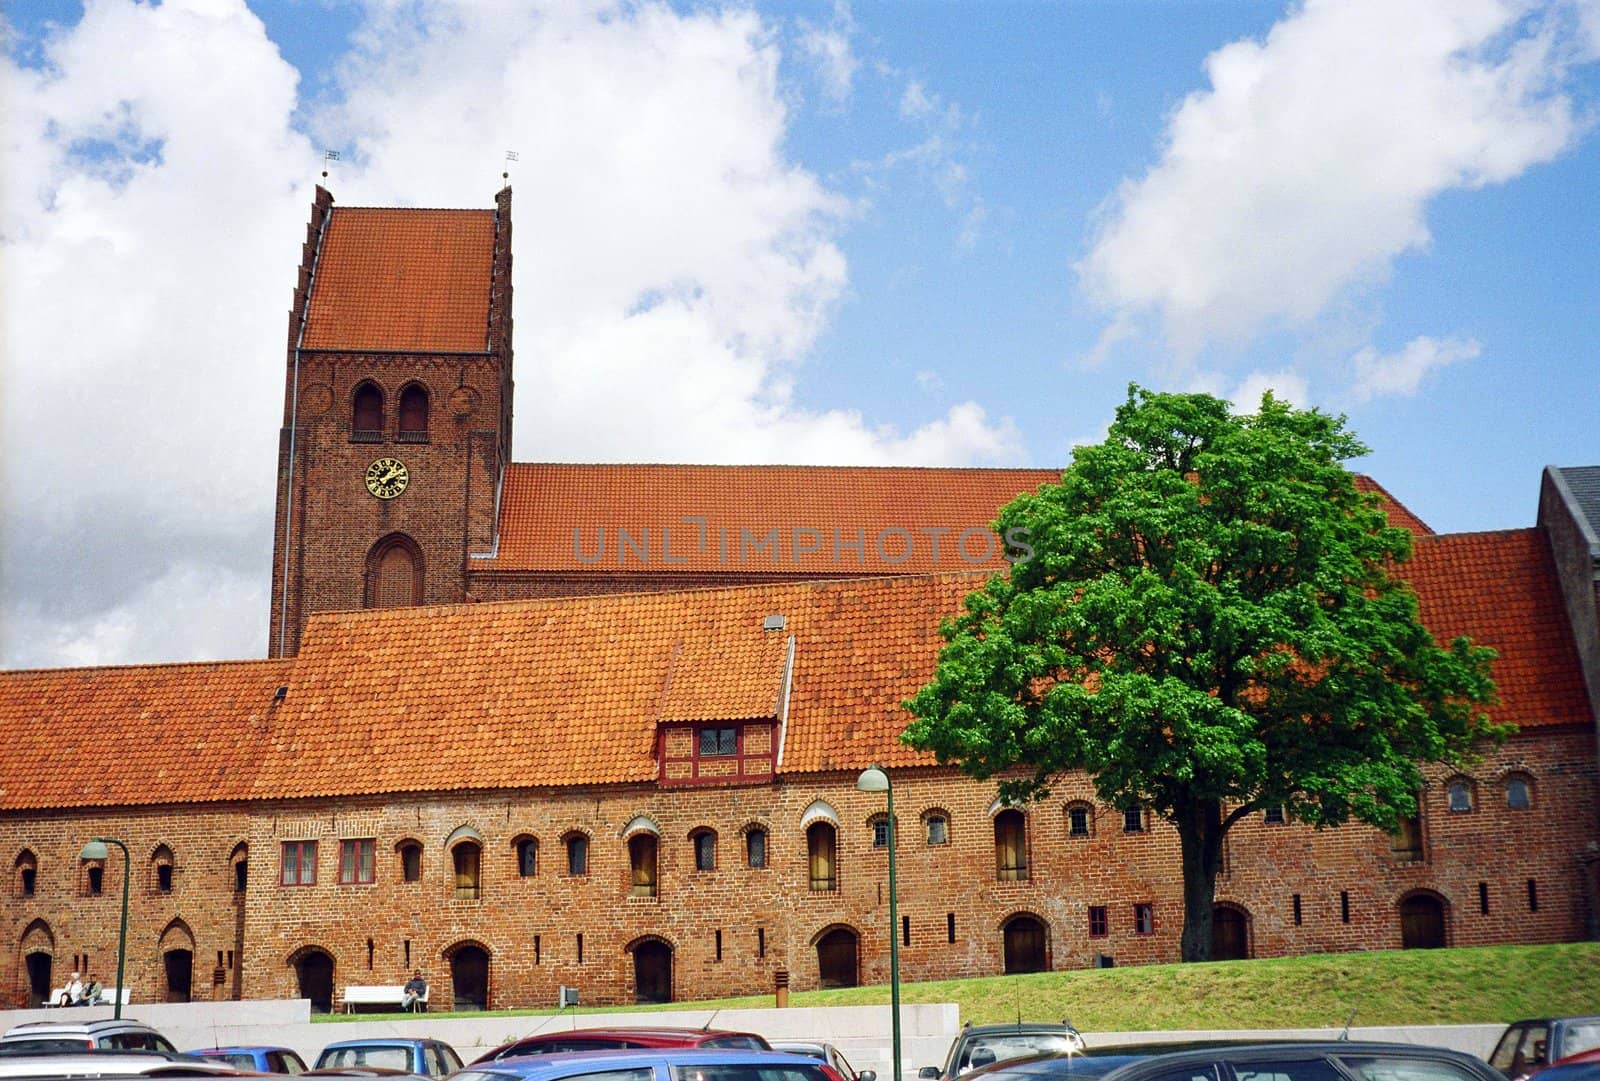 Church in Denmark by Julialine